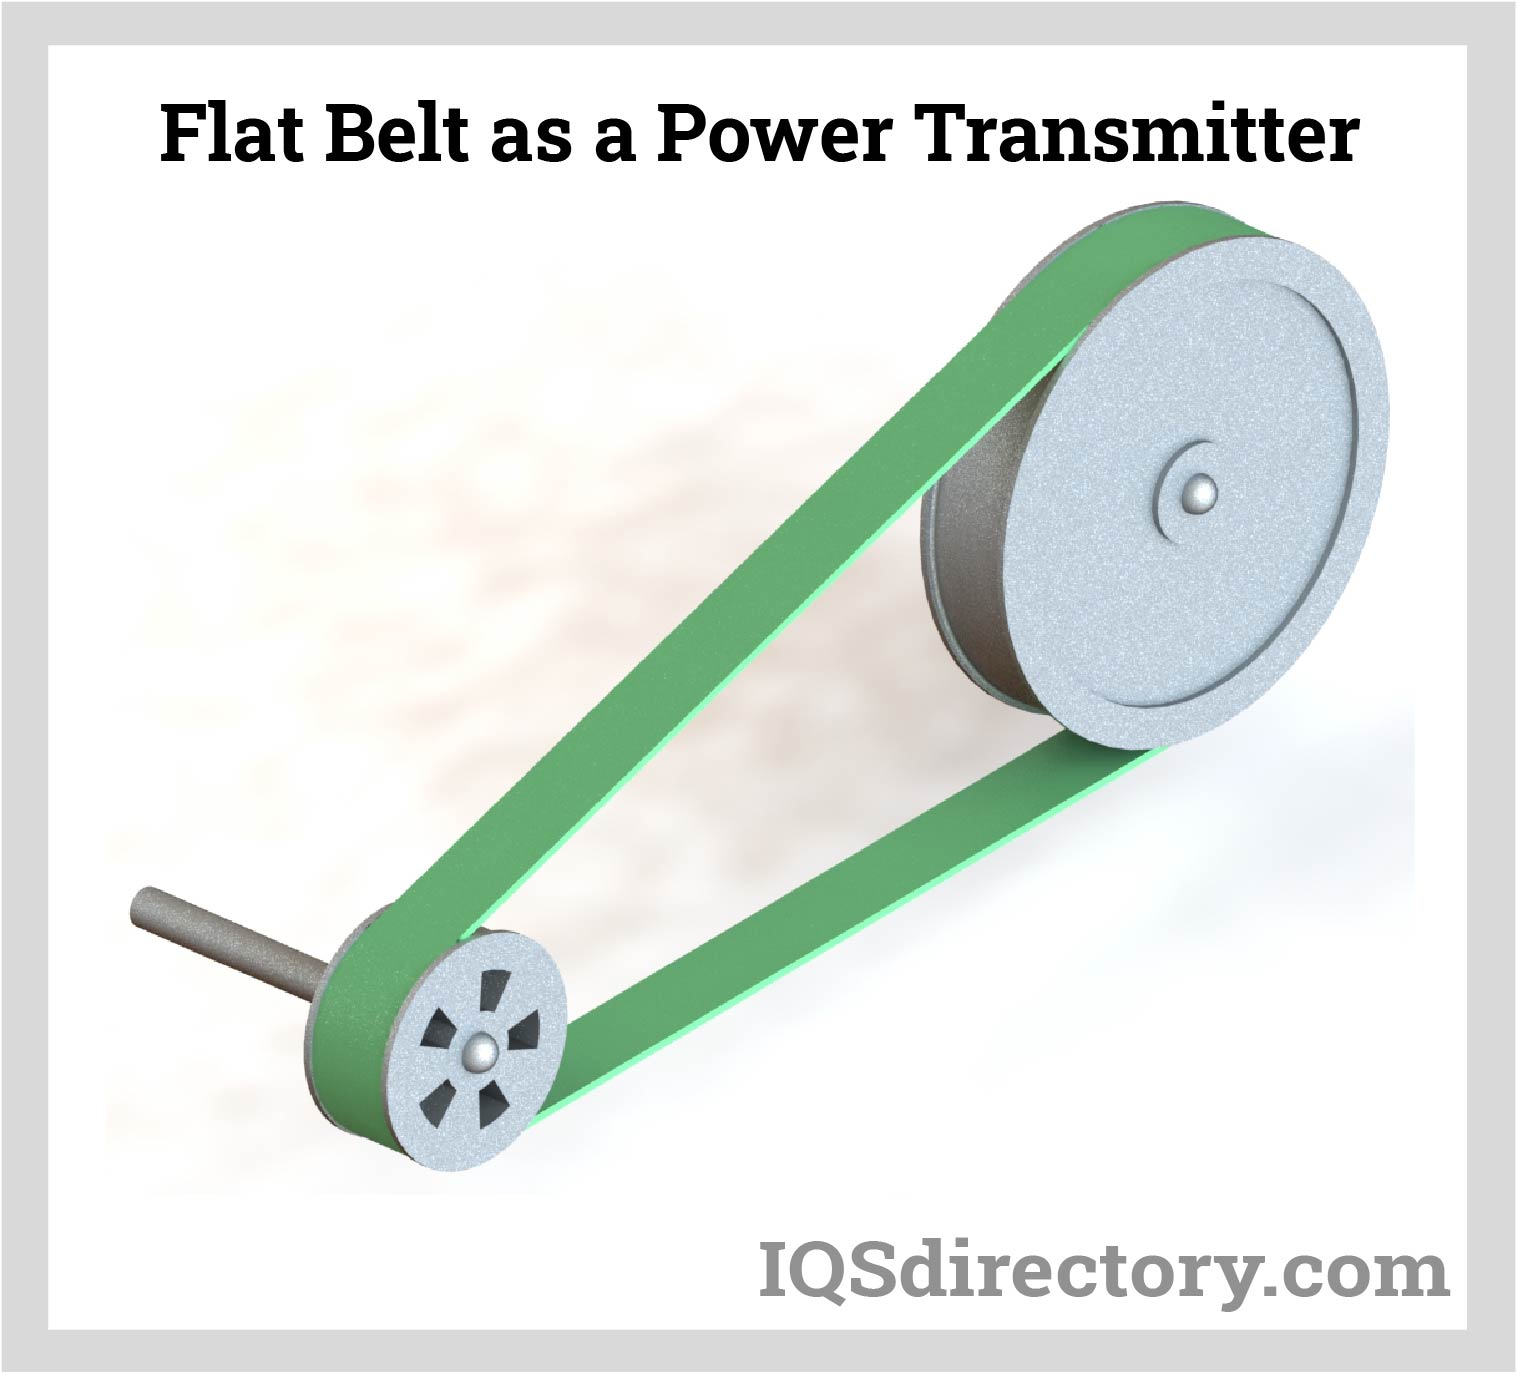 Flat Belt as a Power Transmitter